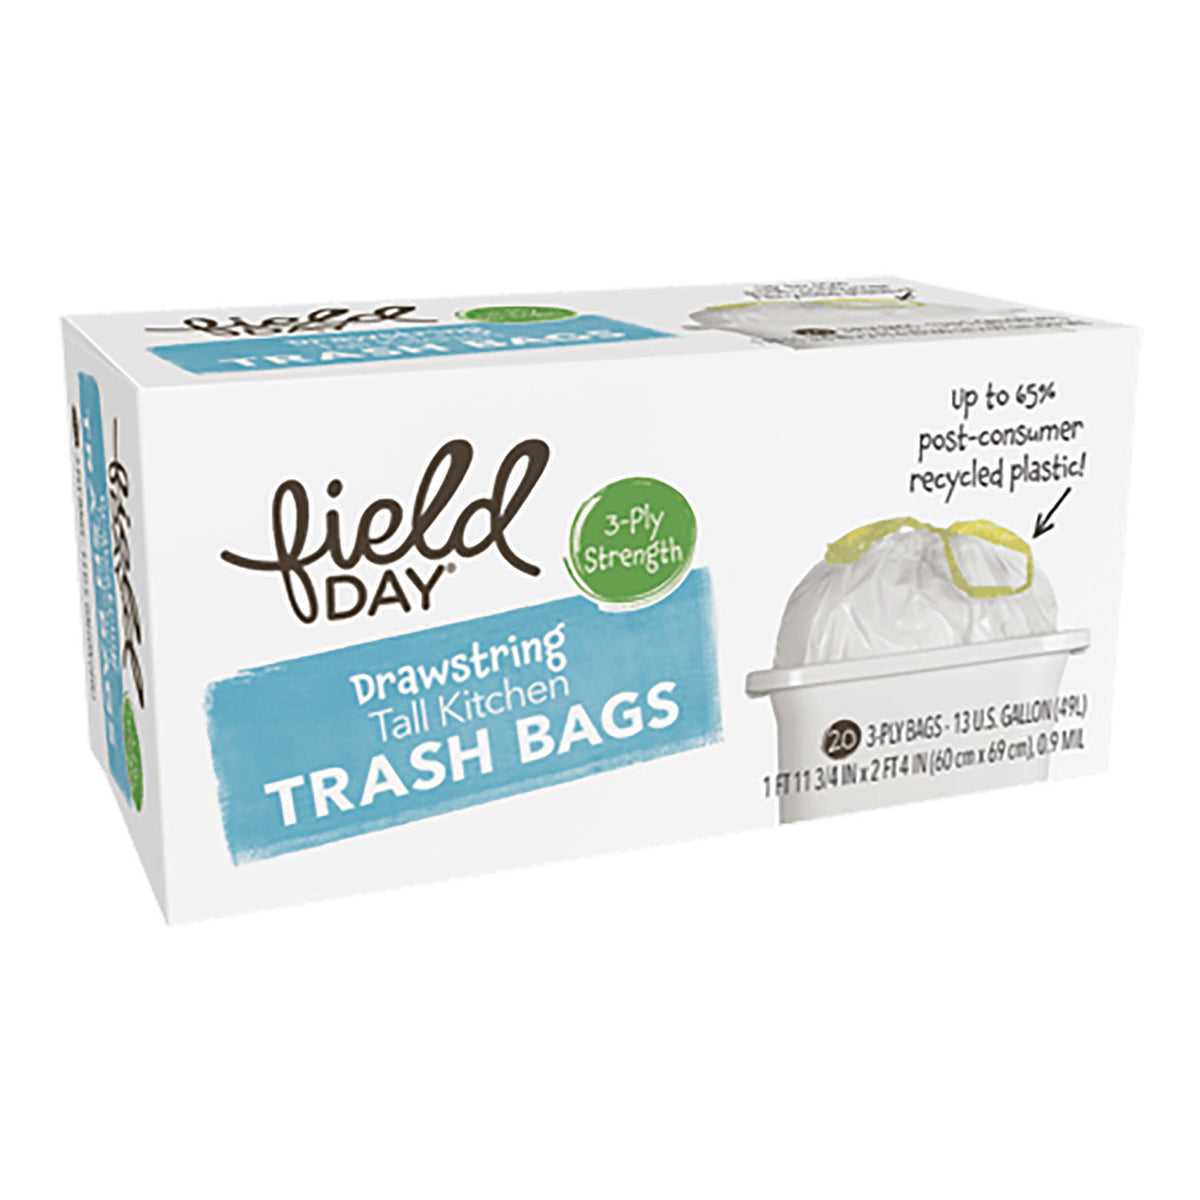 Trash Bags – Bathroom, Lawn, Kitchen – Sudz Community